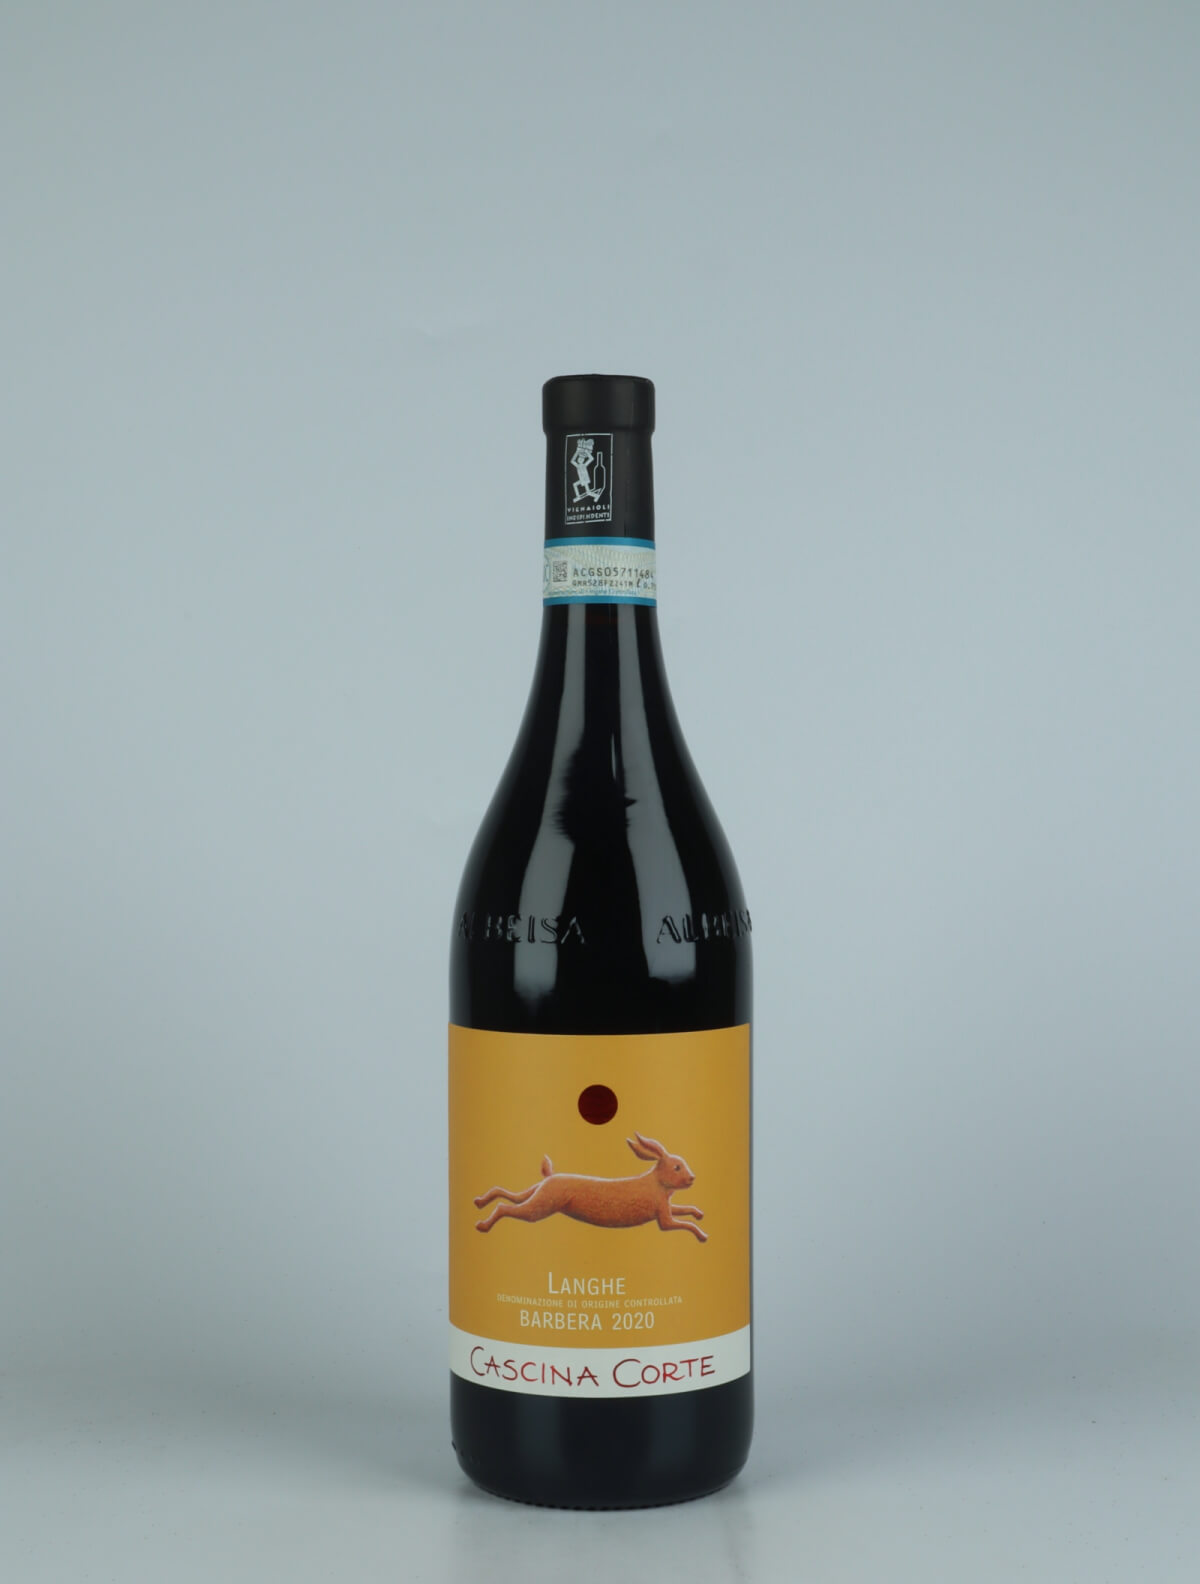 En flaske 2020 Barbera Rødvin fra Cascina Corte, Piemonte i Italien